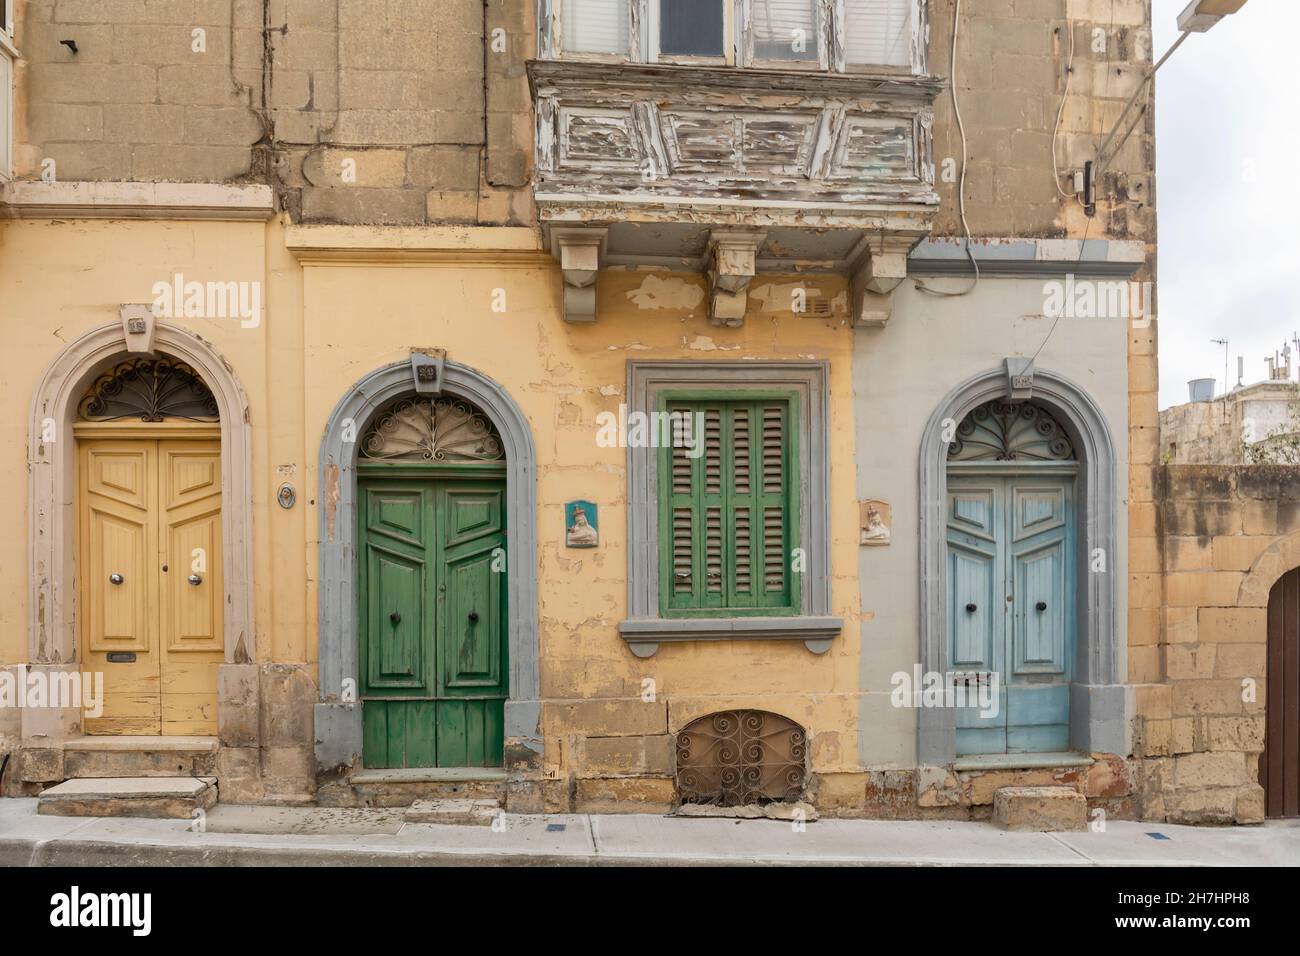 Malerische, farbenfrohe Gebäude in der stillen Stadt Mdina auf Malta, Europa. Eine befestigte alte ummauerte Stadt auf der UNESCO-Liste des Weltkulturerbes. Stockfoto